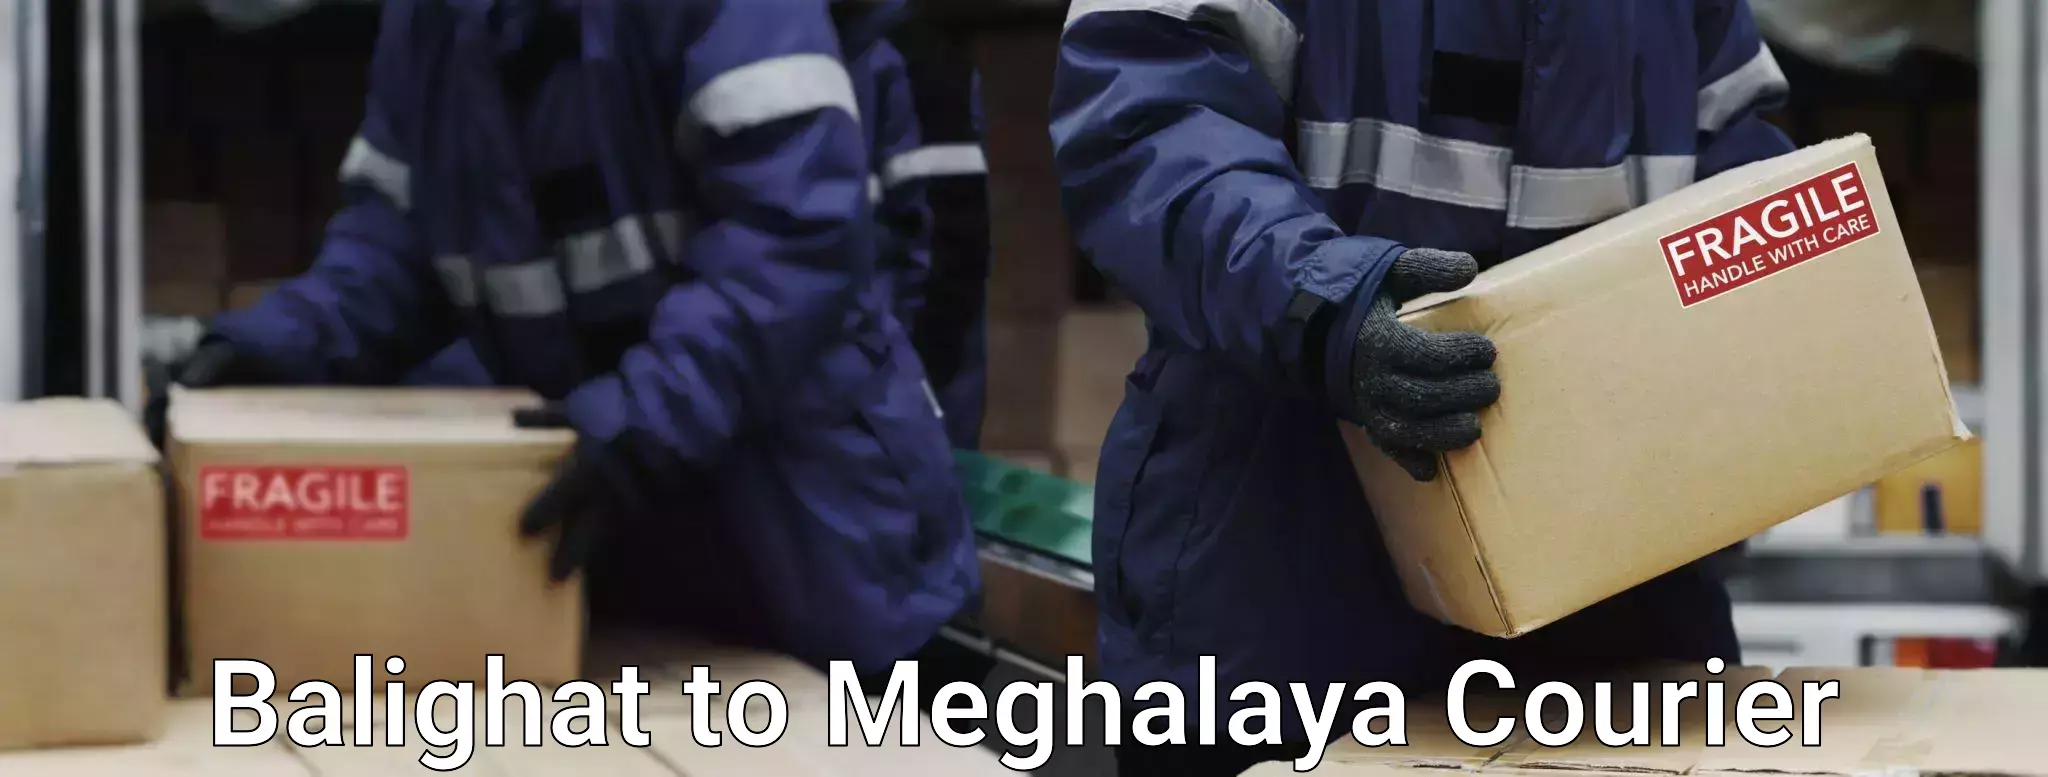 Doorstep luggage collection Balighat to Meghalaya